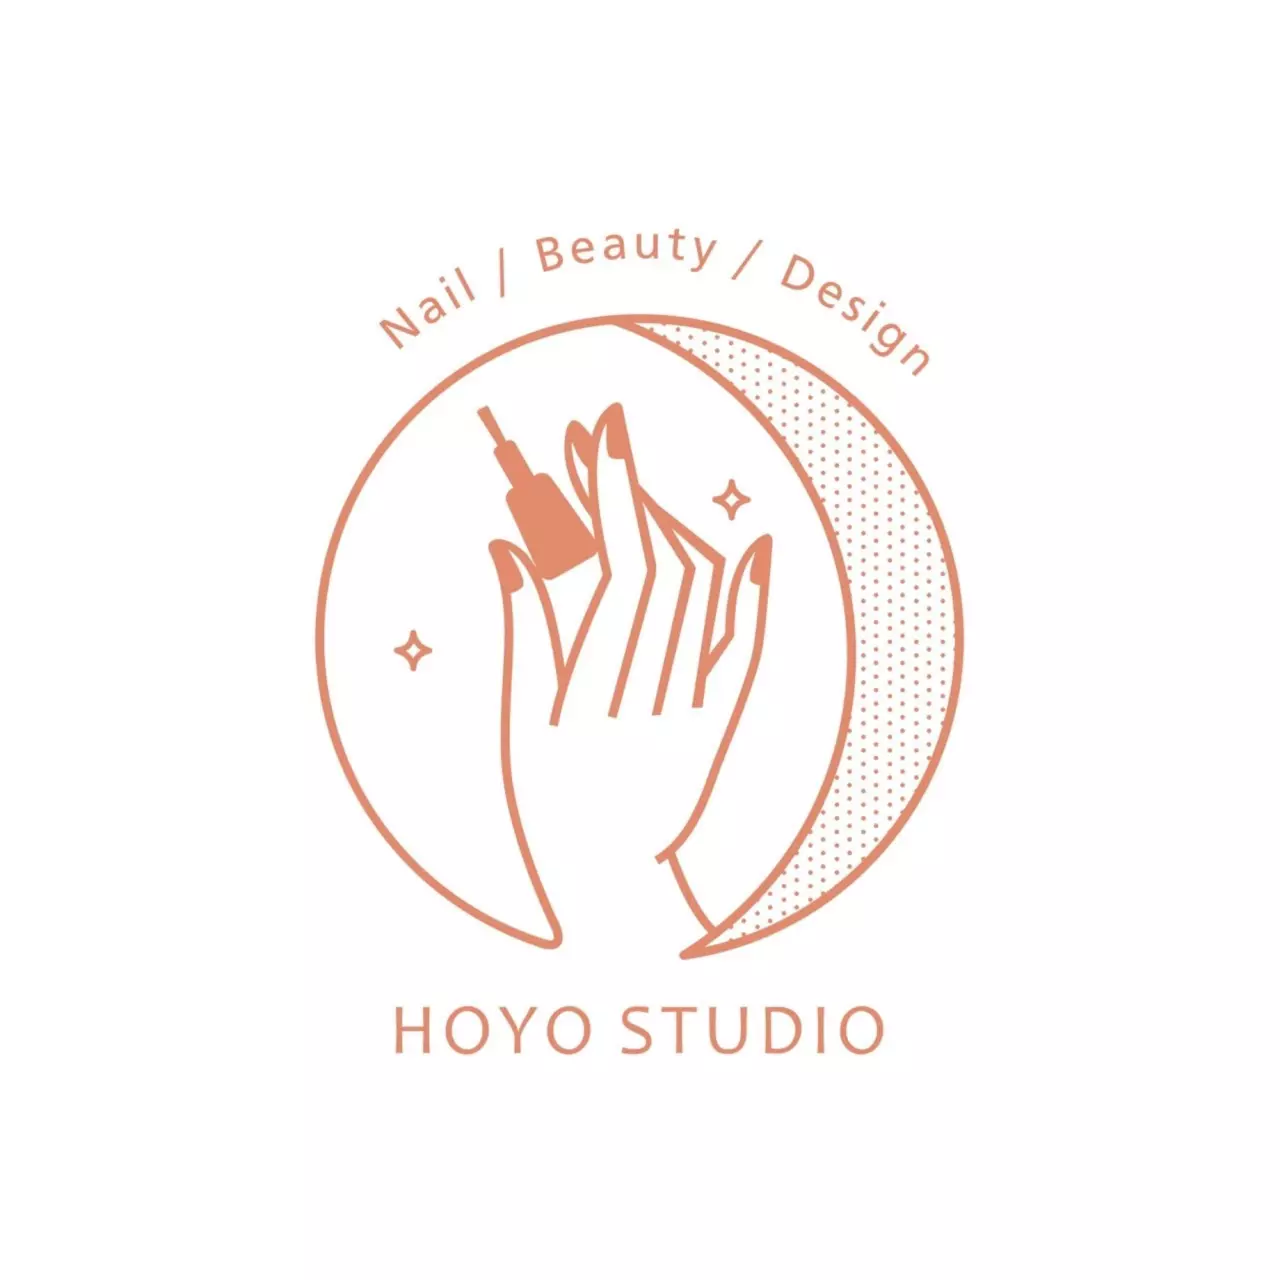 Hoyo studio 吼喲工作室-台北店 x 豐傑特約免費美容